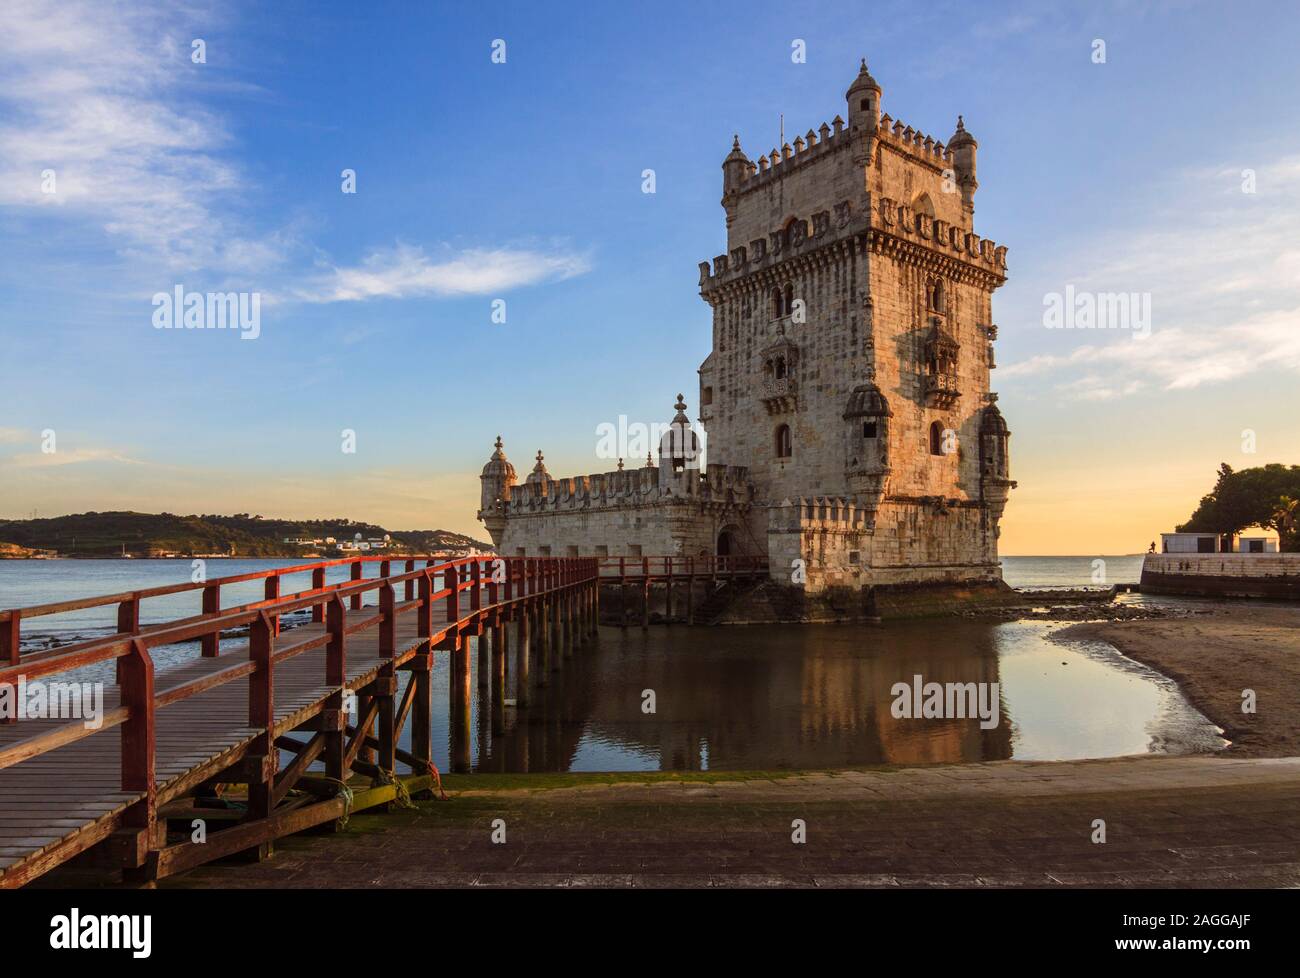 Lissabon, Portugal: Turm von Belém Aussicht bei Sonnenuntergang. Die UNESCO-Gebäude wurde im Jahr 1515 von Francisco de Arruda entworfen, der Hafen der Stadt zu verteidigen. Stockfoto